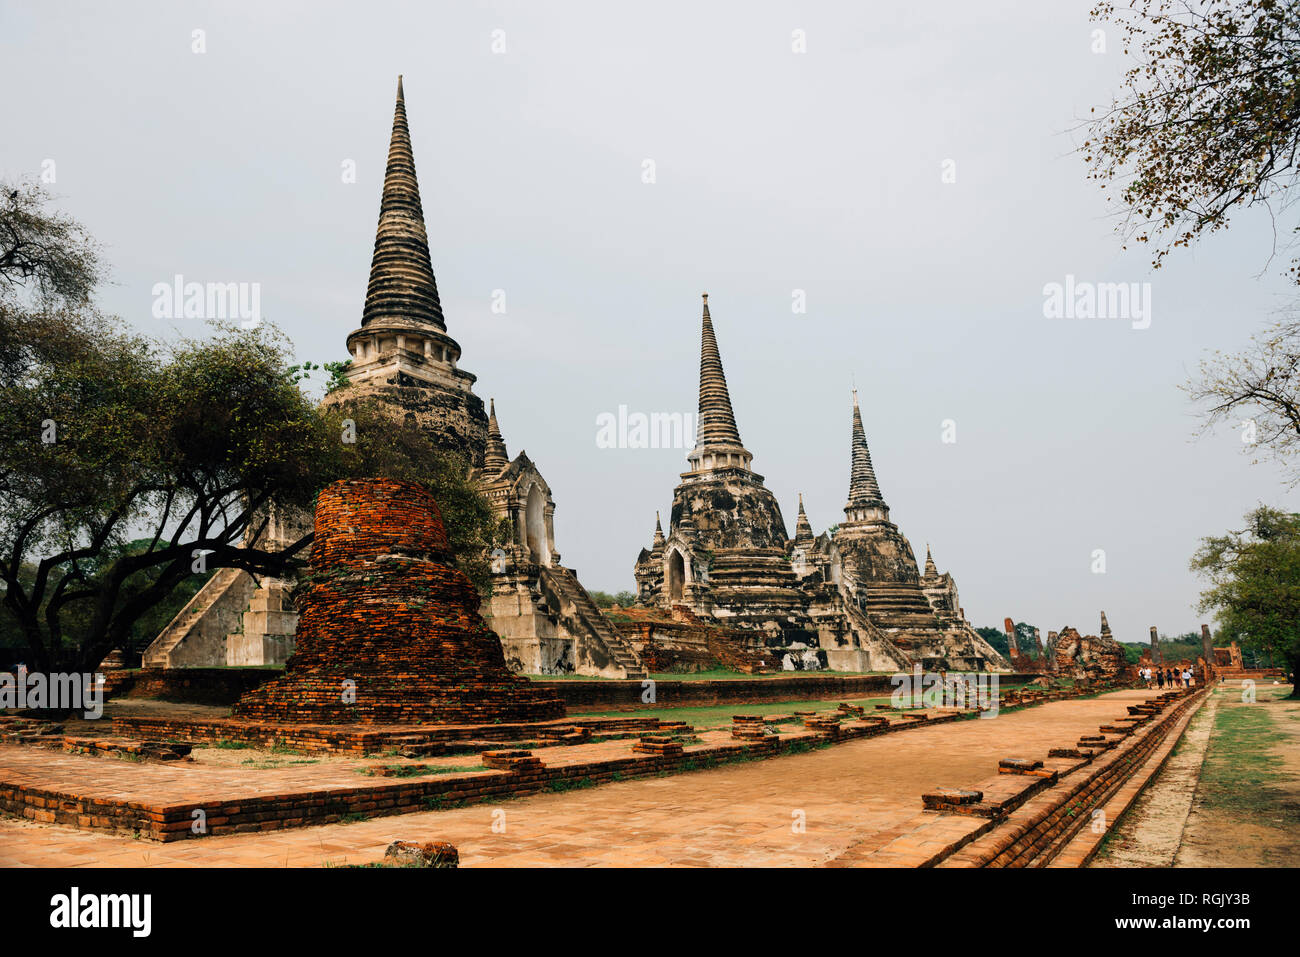 Thailand, Ayutthaya, Ancient ruins of Wat Mahathat temple Stock Photo